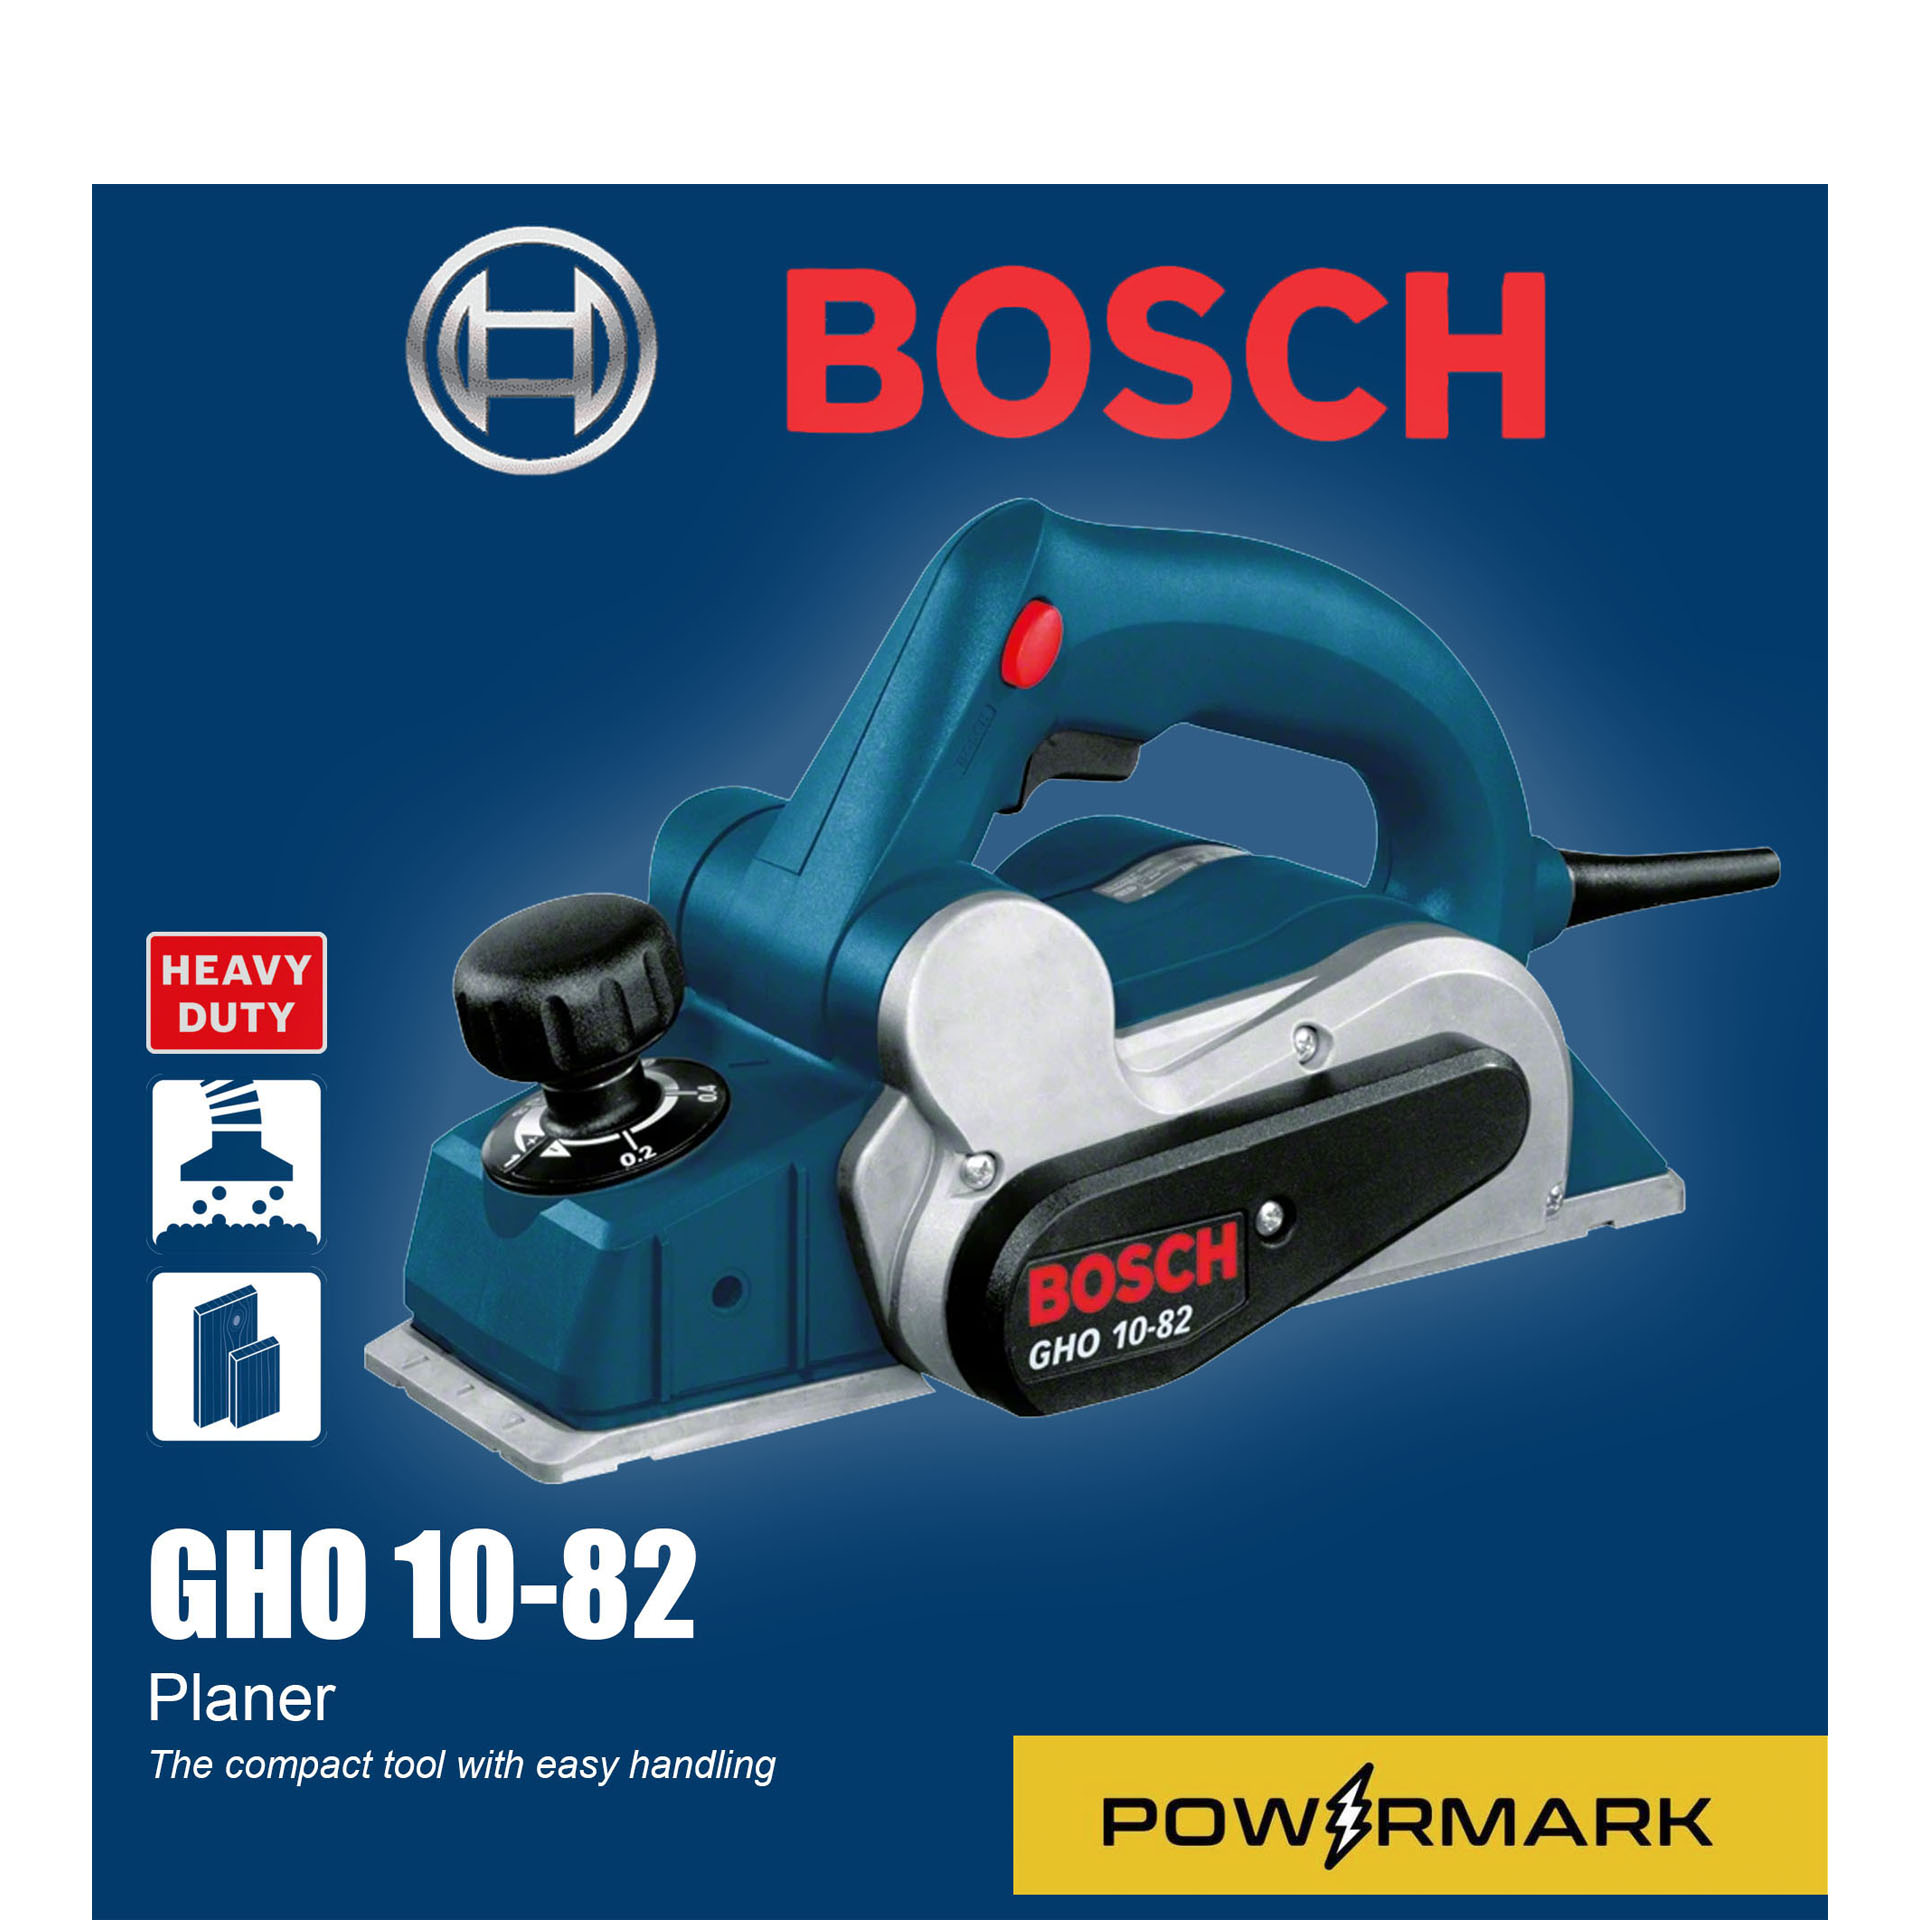 Bosch - Planer - GHO 10-82